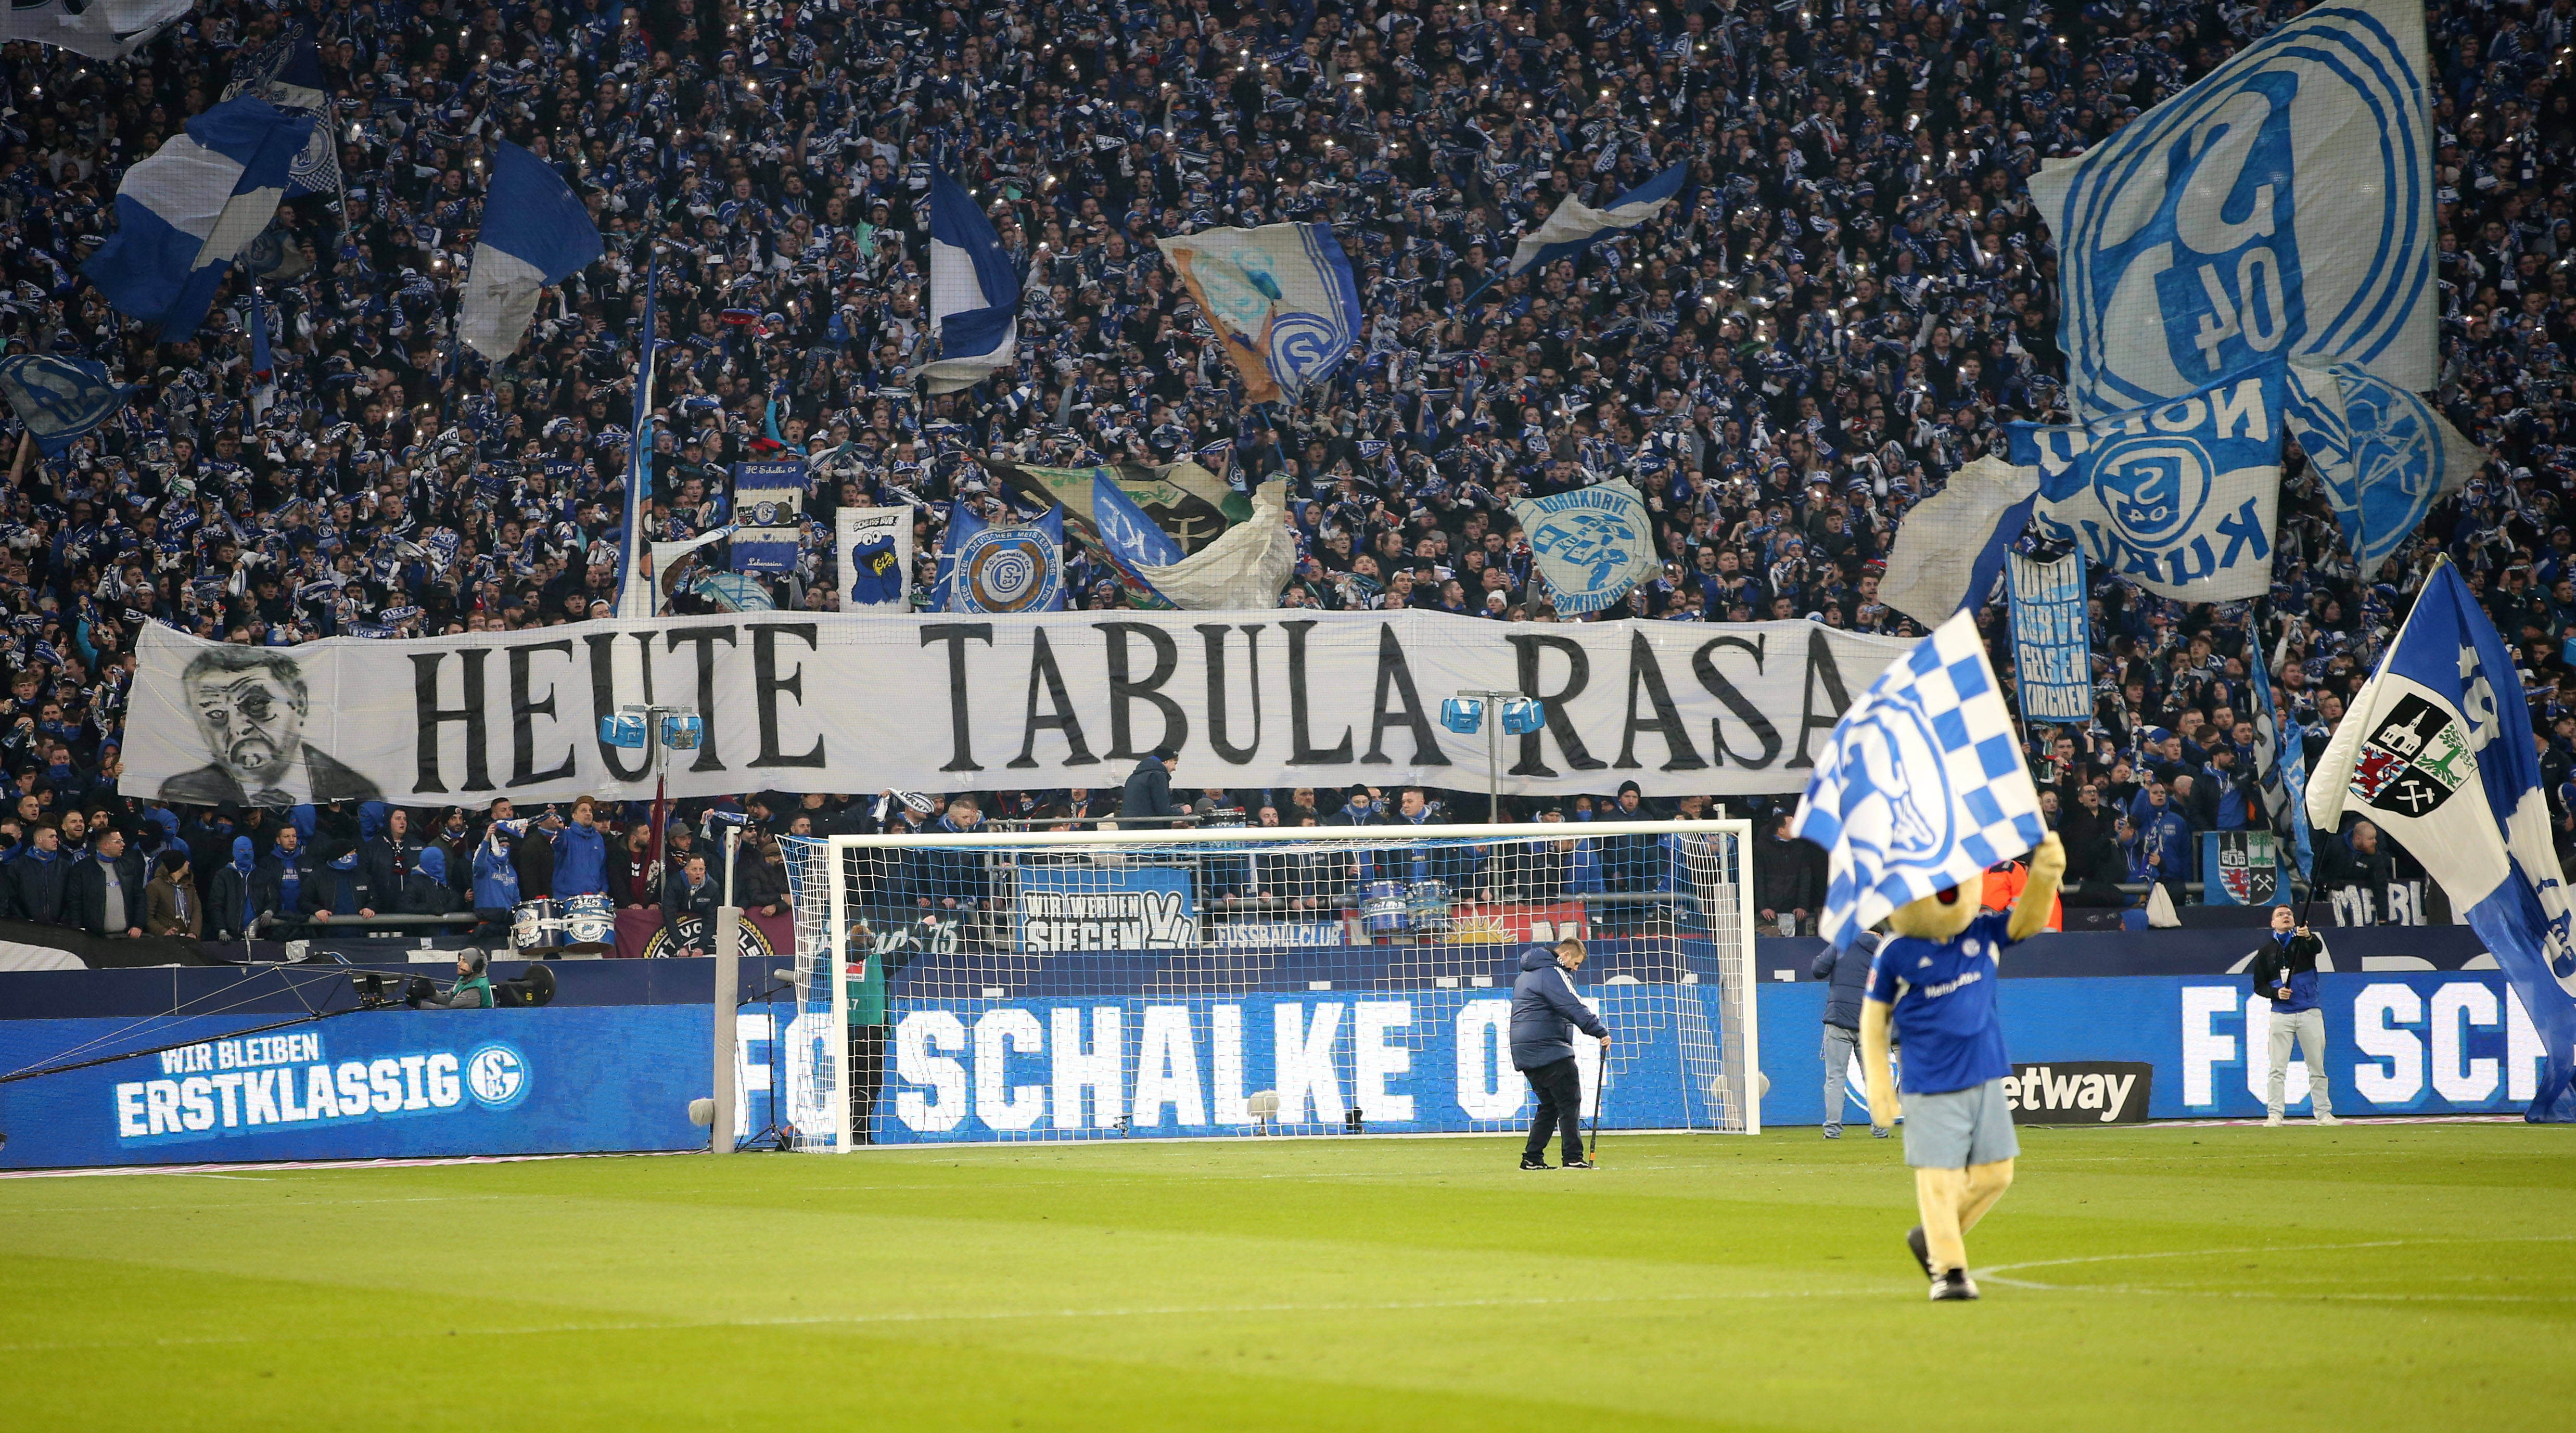 FC Schalke 04 Nach Razzia - Ultras im Derby mit klarer Ansage an Polizei